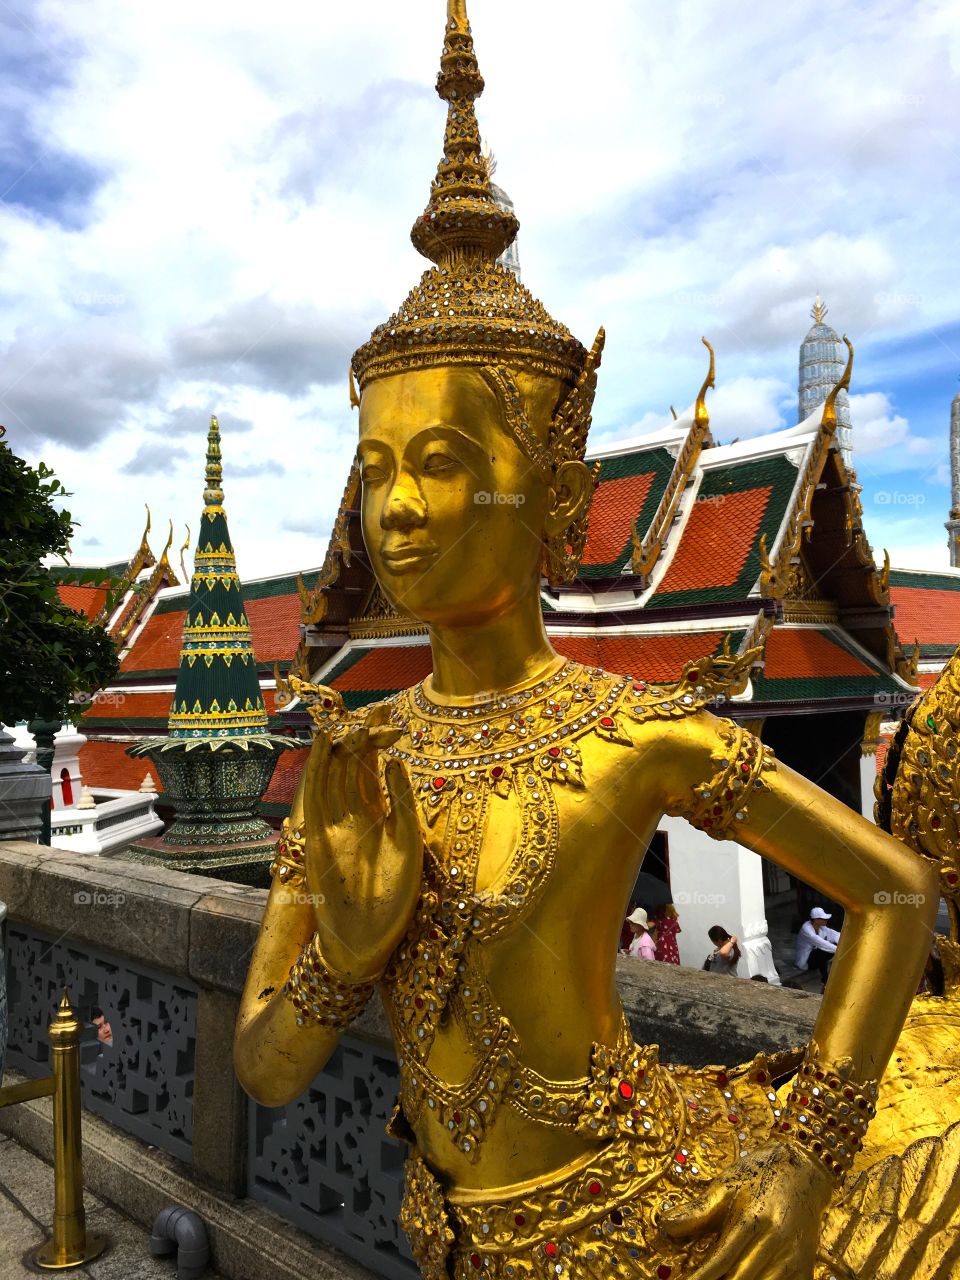 Grand Palace / Bangkok Thailand 52